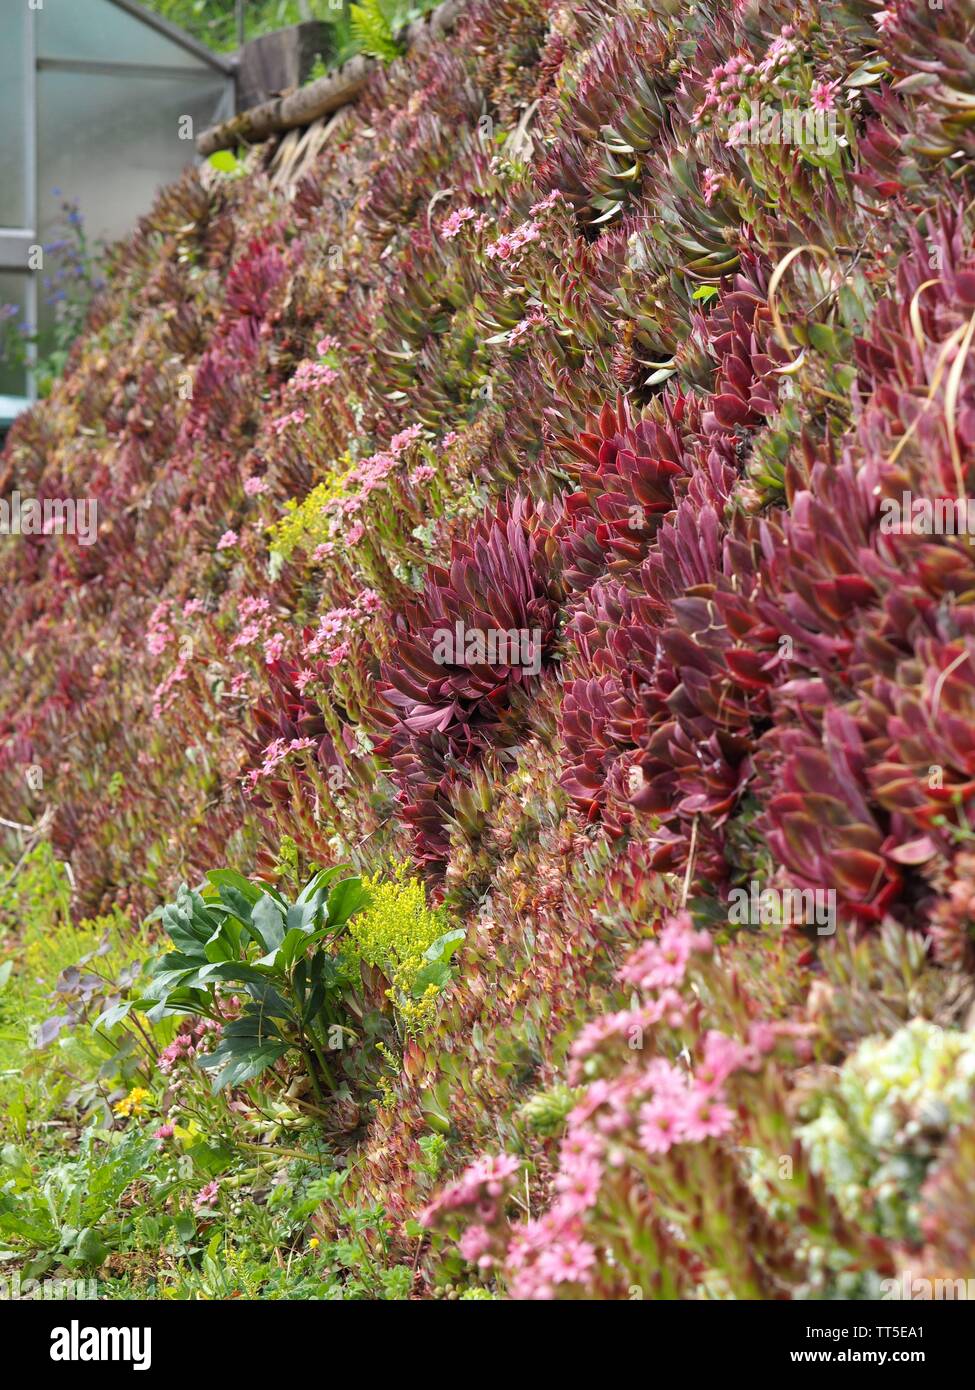 Beaucoup de différentes plantes grasses de plus en plus verticalement sur un mur Banque D'Images